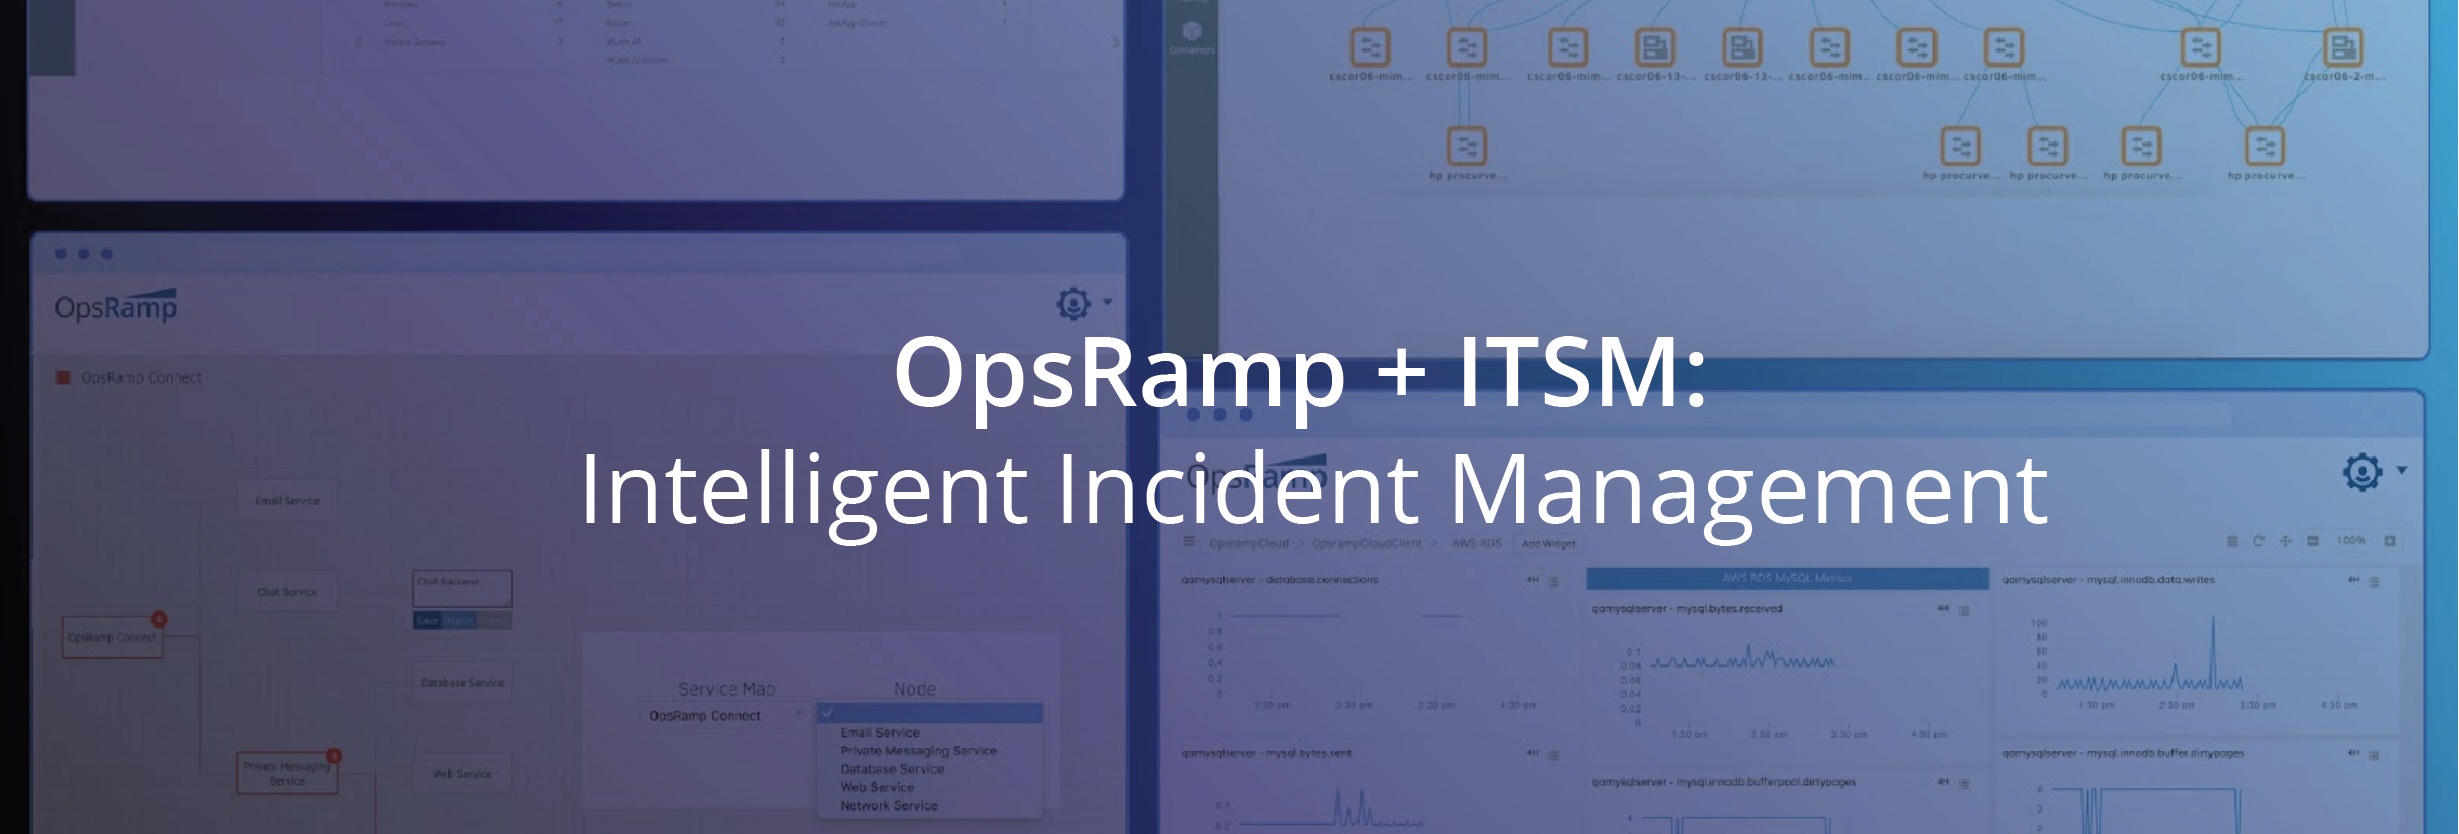 [On-Demand Webinar] OpsRamp + ITSM: Intelligent Incident Management For Superior Digital Performance